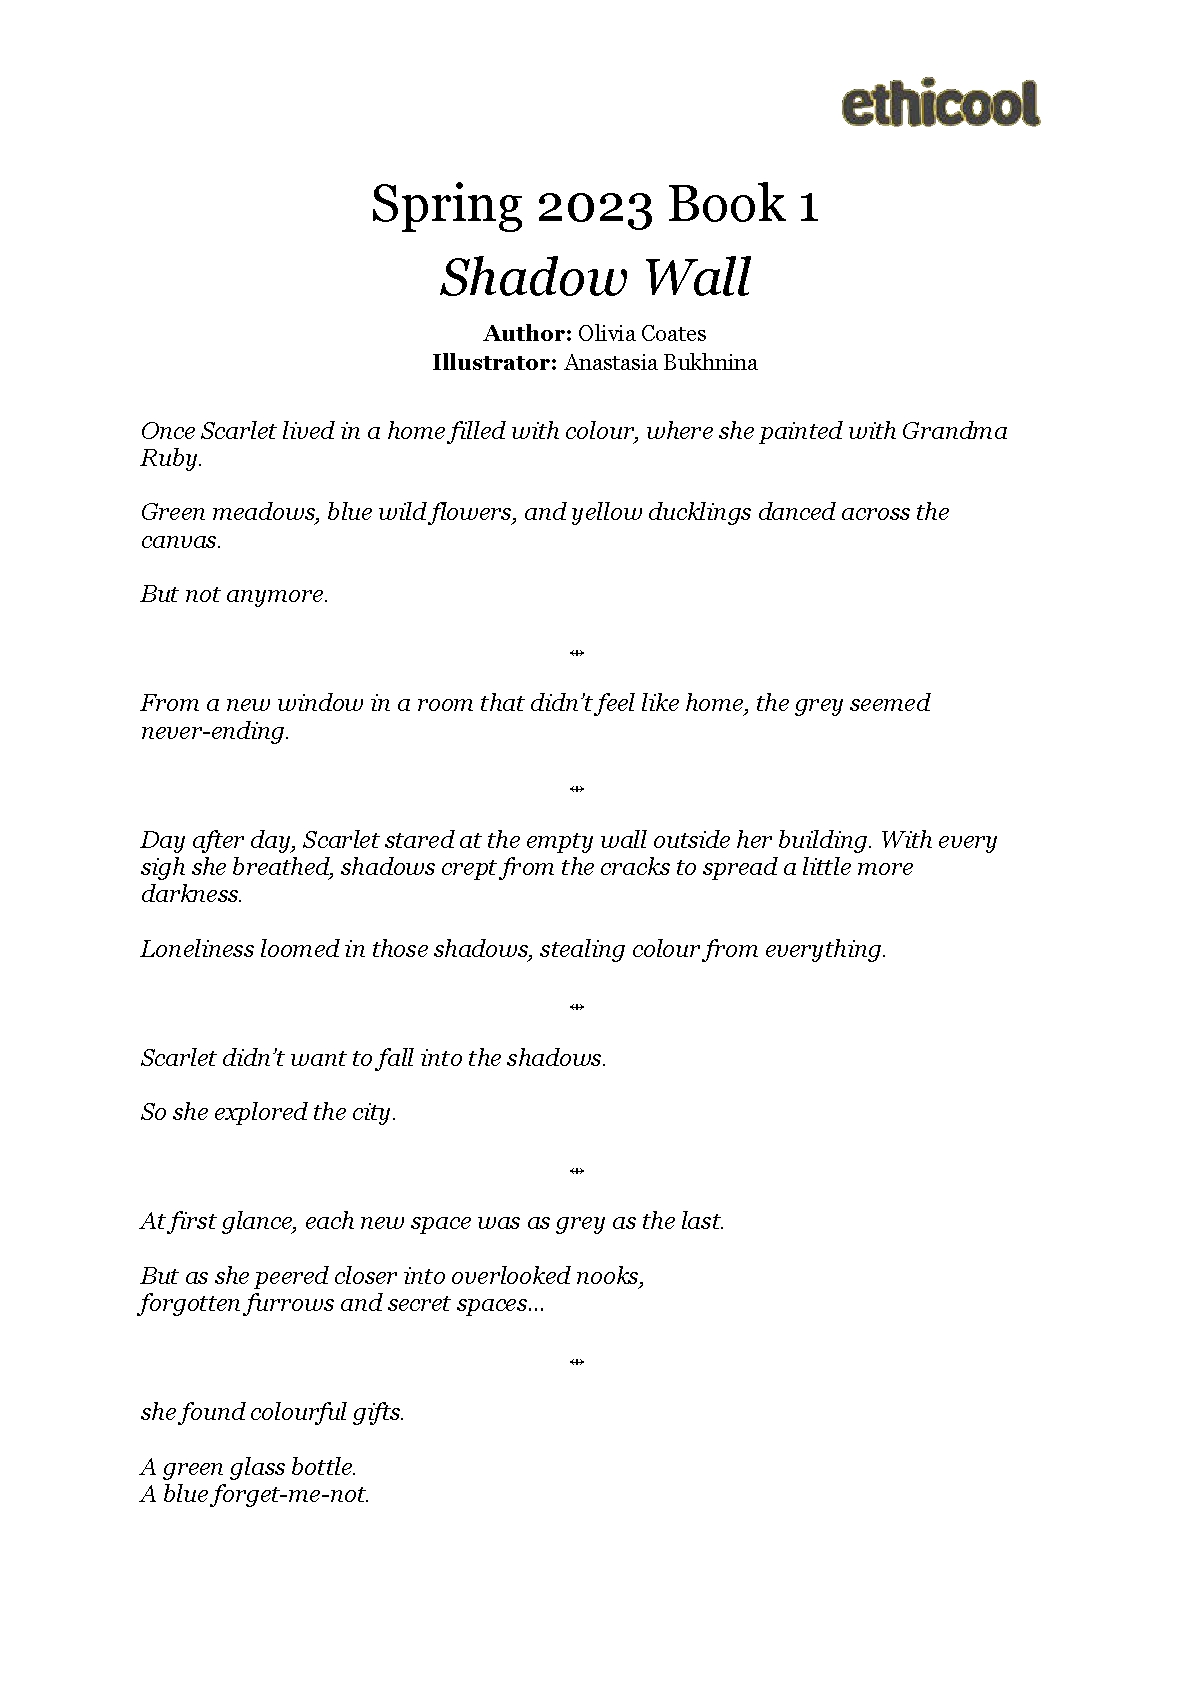 Shadow Wall